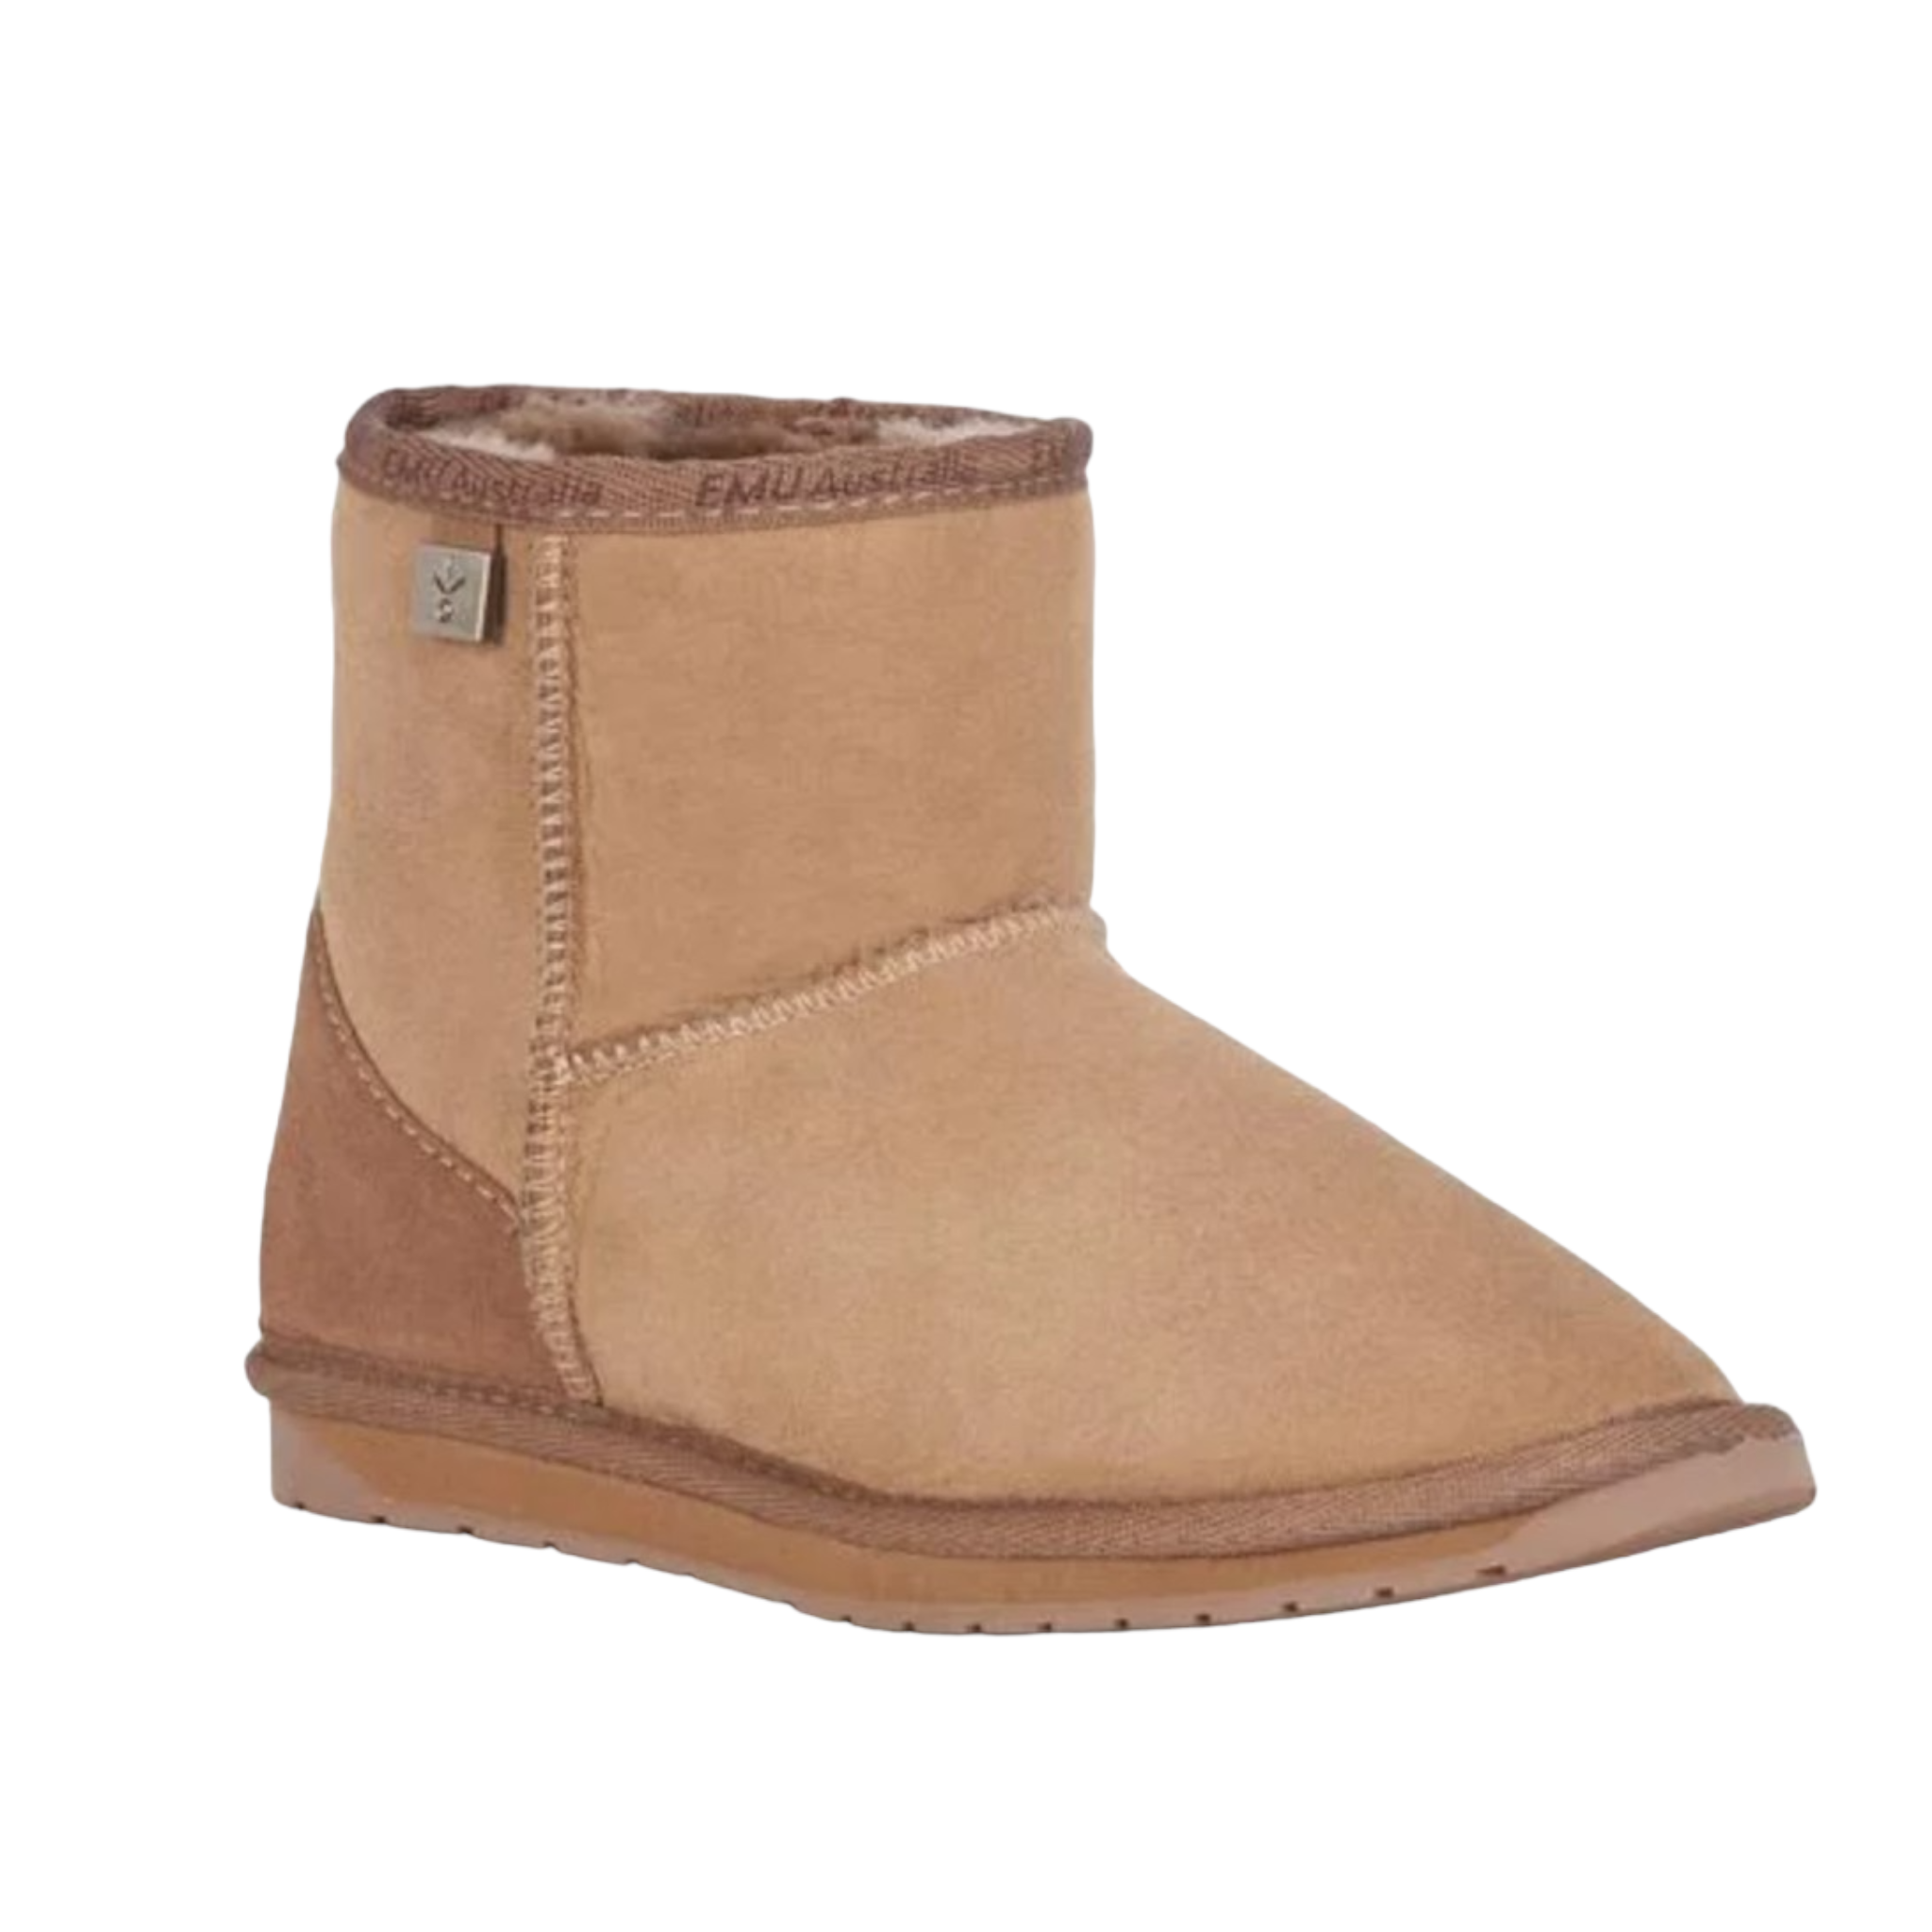 Stinger Mini - shoe&me - EMU - Slipper - Boots, Slipper, Unisex, Winter